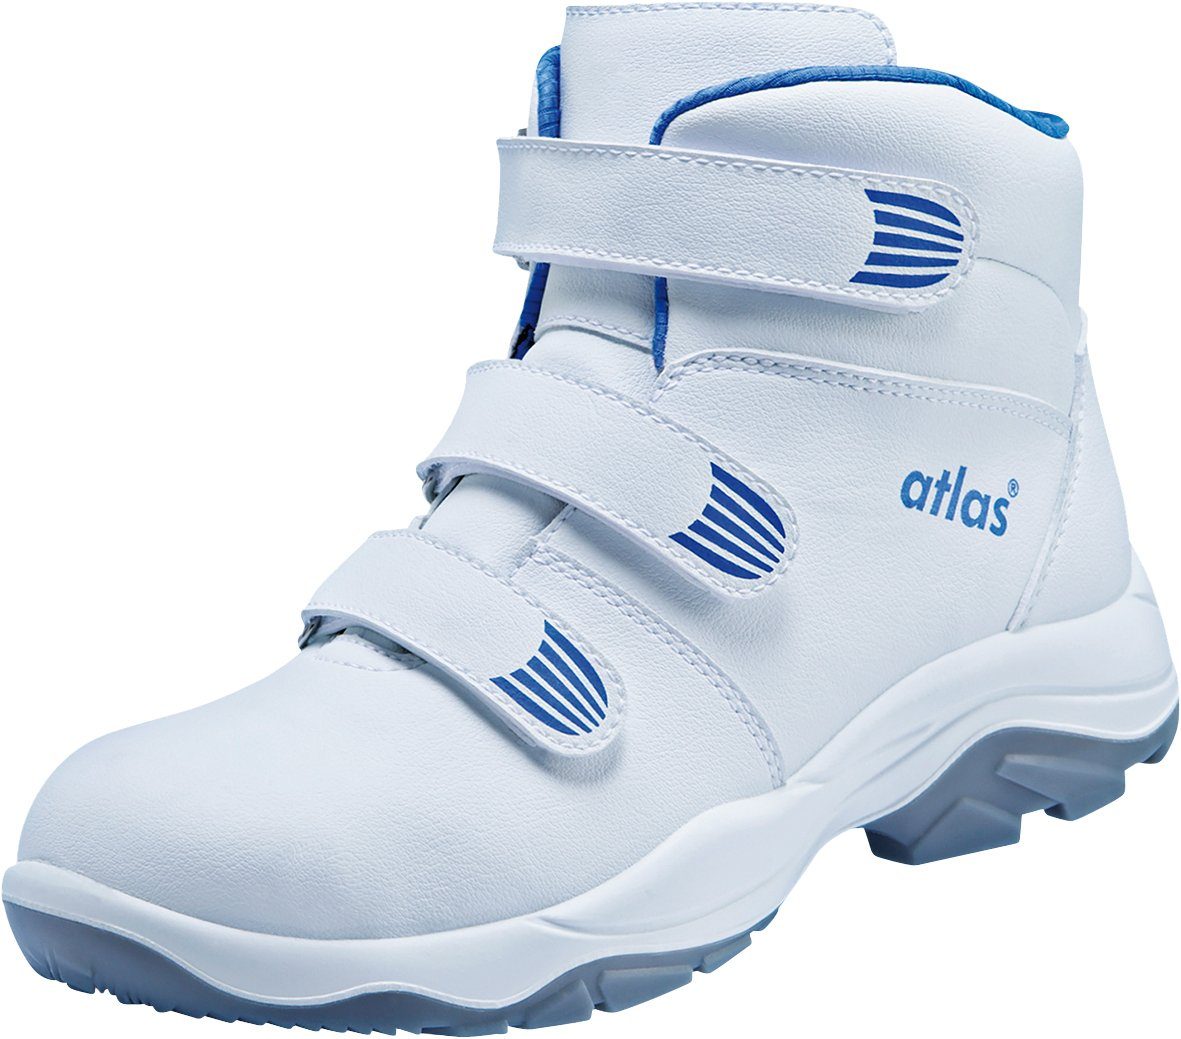 Atlas Schuhe CL 573 EN 20345 Sicherheitsklasse Sicherheitsschuh ISO S2